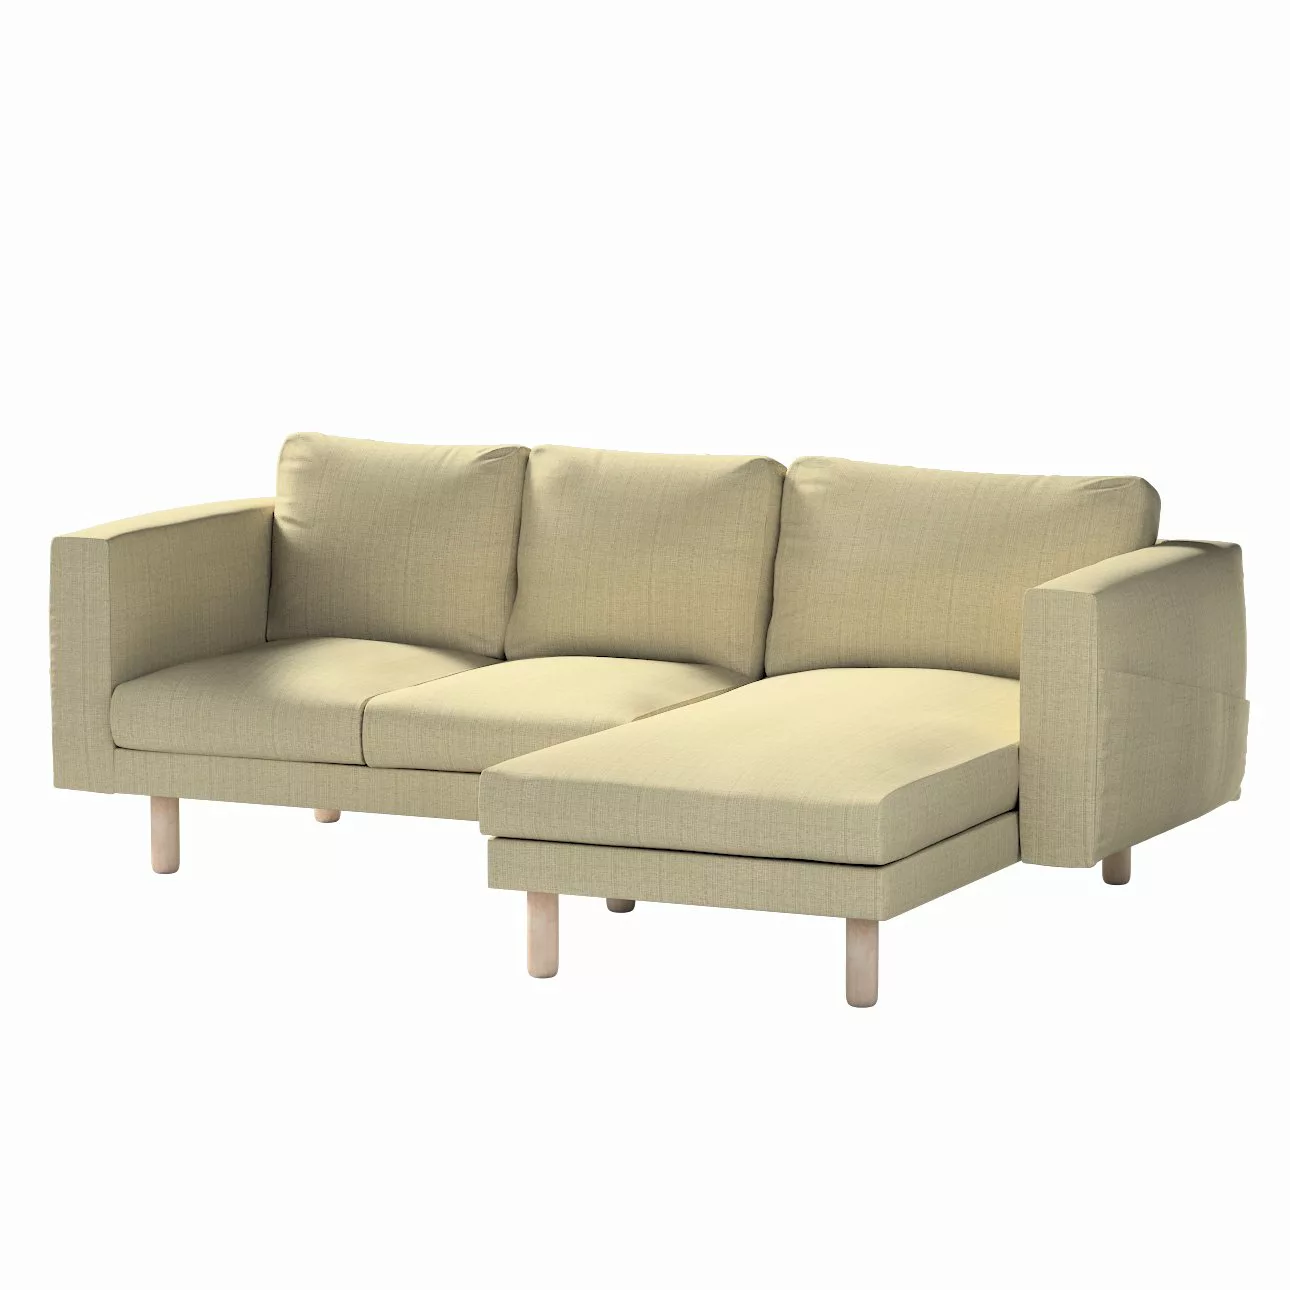 Bezug für Norsborg 3-Sitzer Sofa mit Recamiere, beige-creme, Norsborg Bezug günstig online kaufen